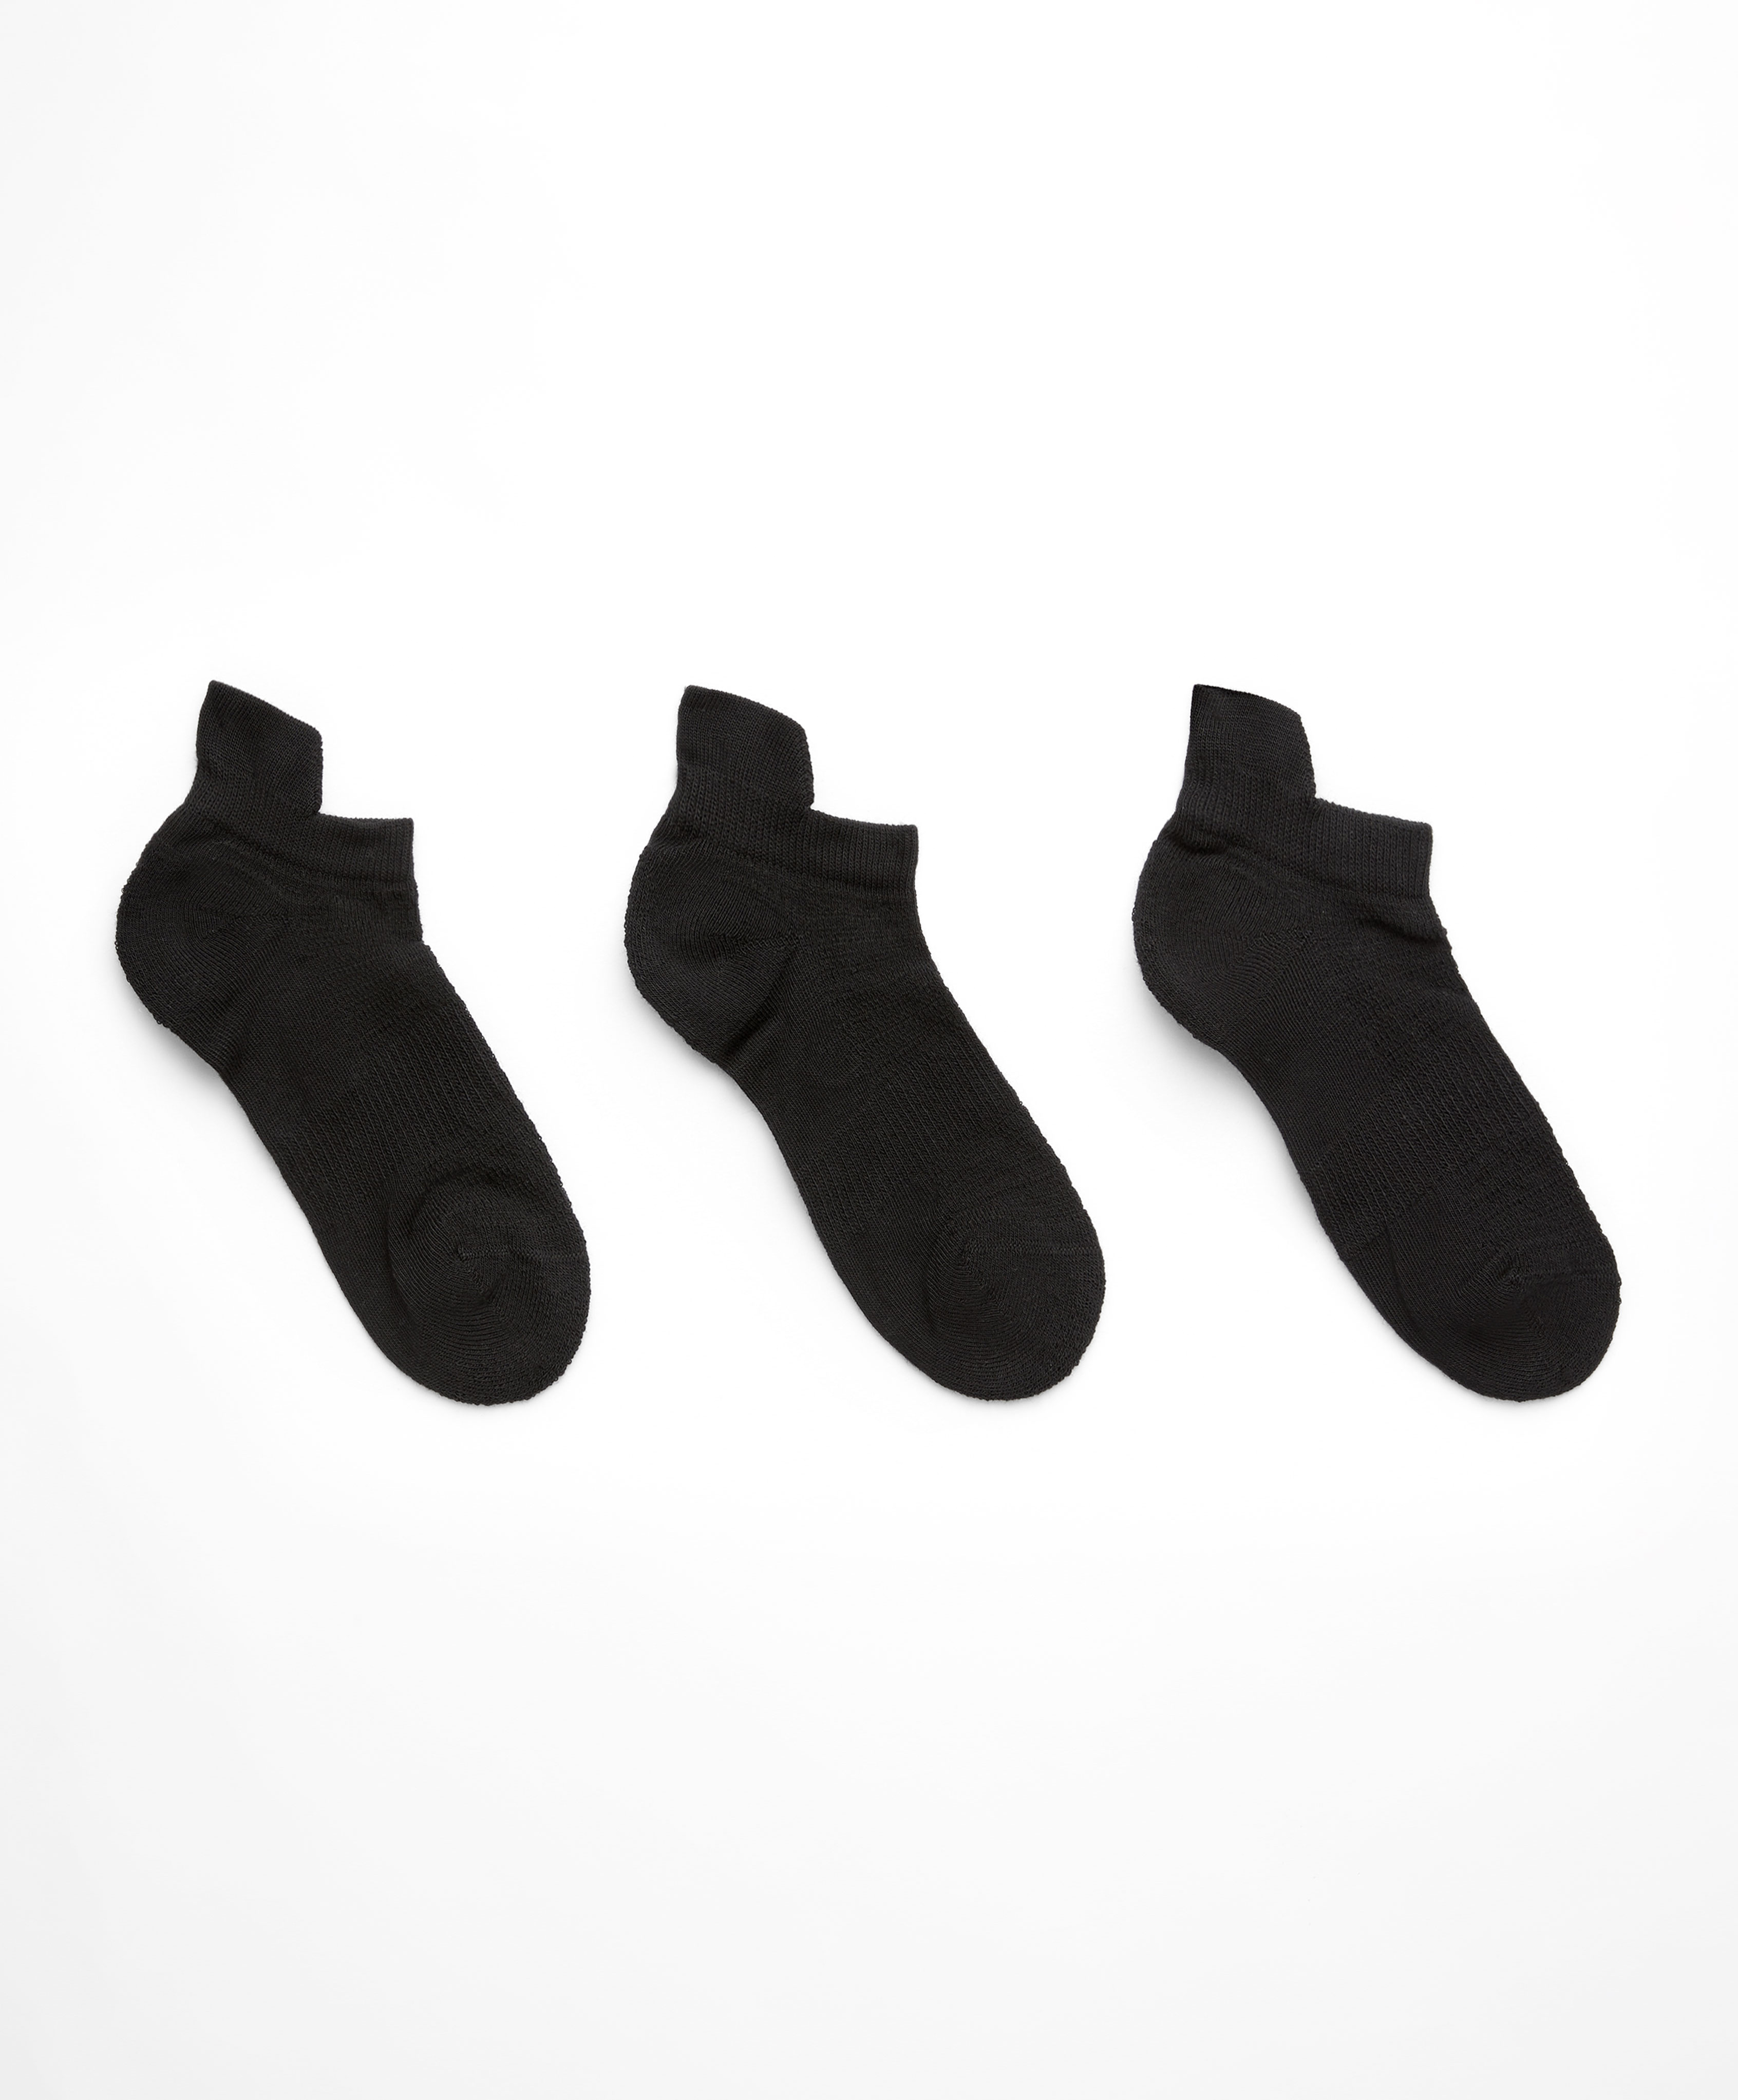 3 ζεύγη αθλητικές κάλτσες sneaker με γλώσσα με μείγμα από βαμβάκι